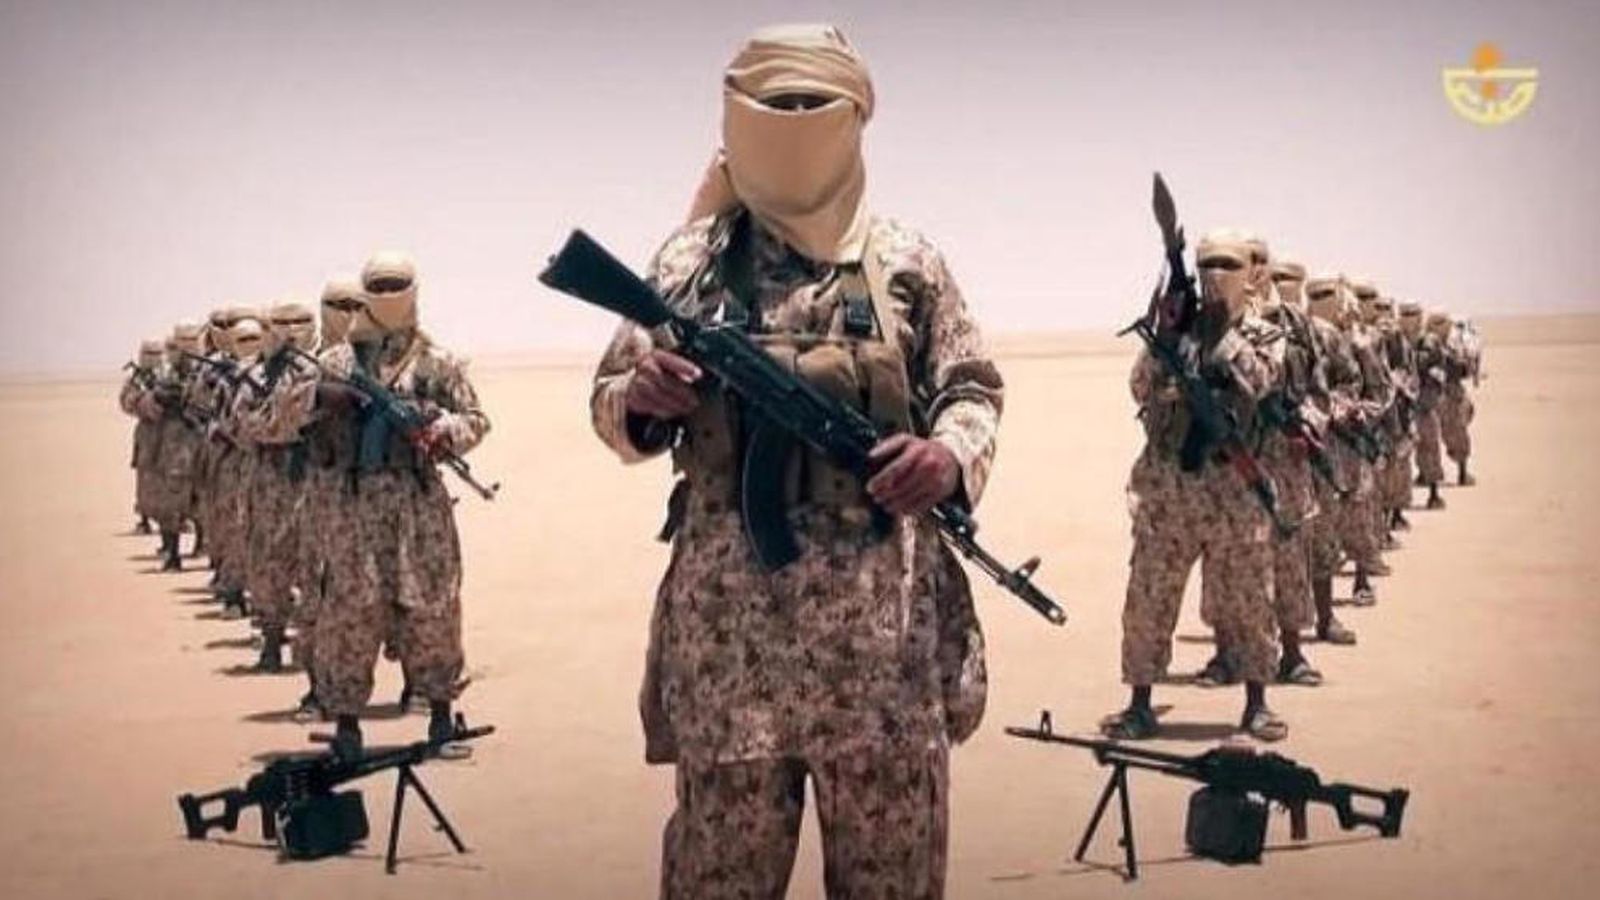 Foto: Imagen de milicianos del Estado Islámico difundida por el ISIS con fines propagandísticos.